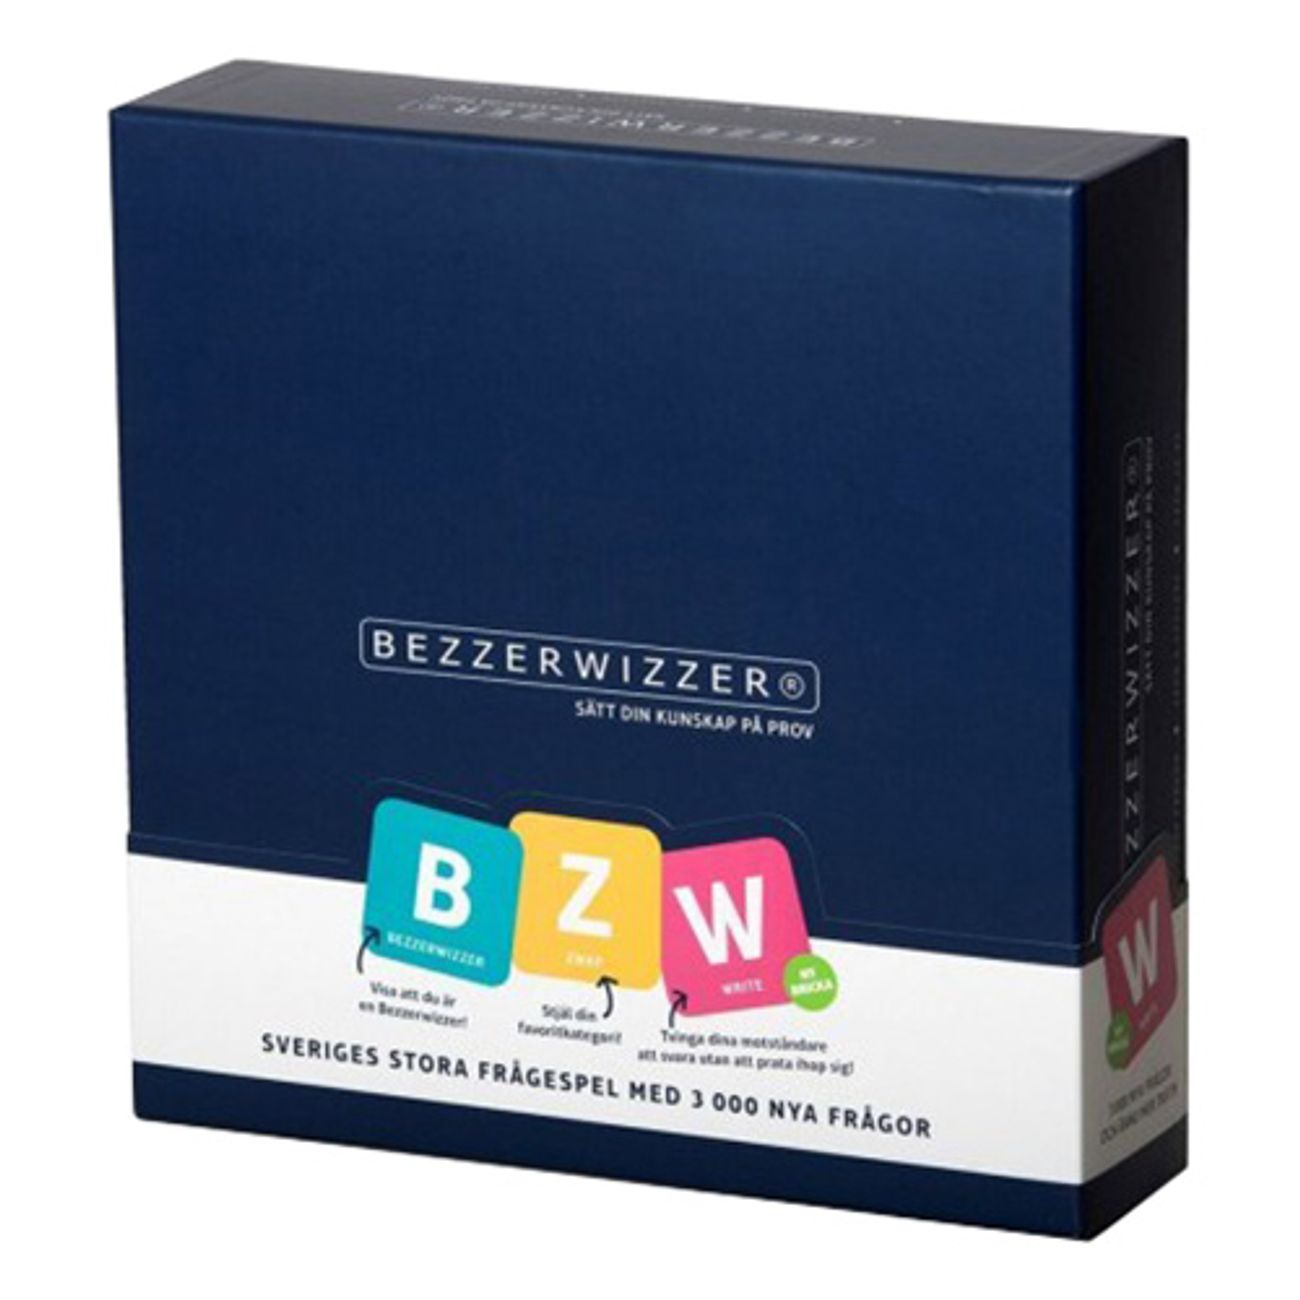 bezzerwizzer-original-sallskapsspel-1